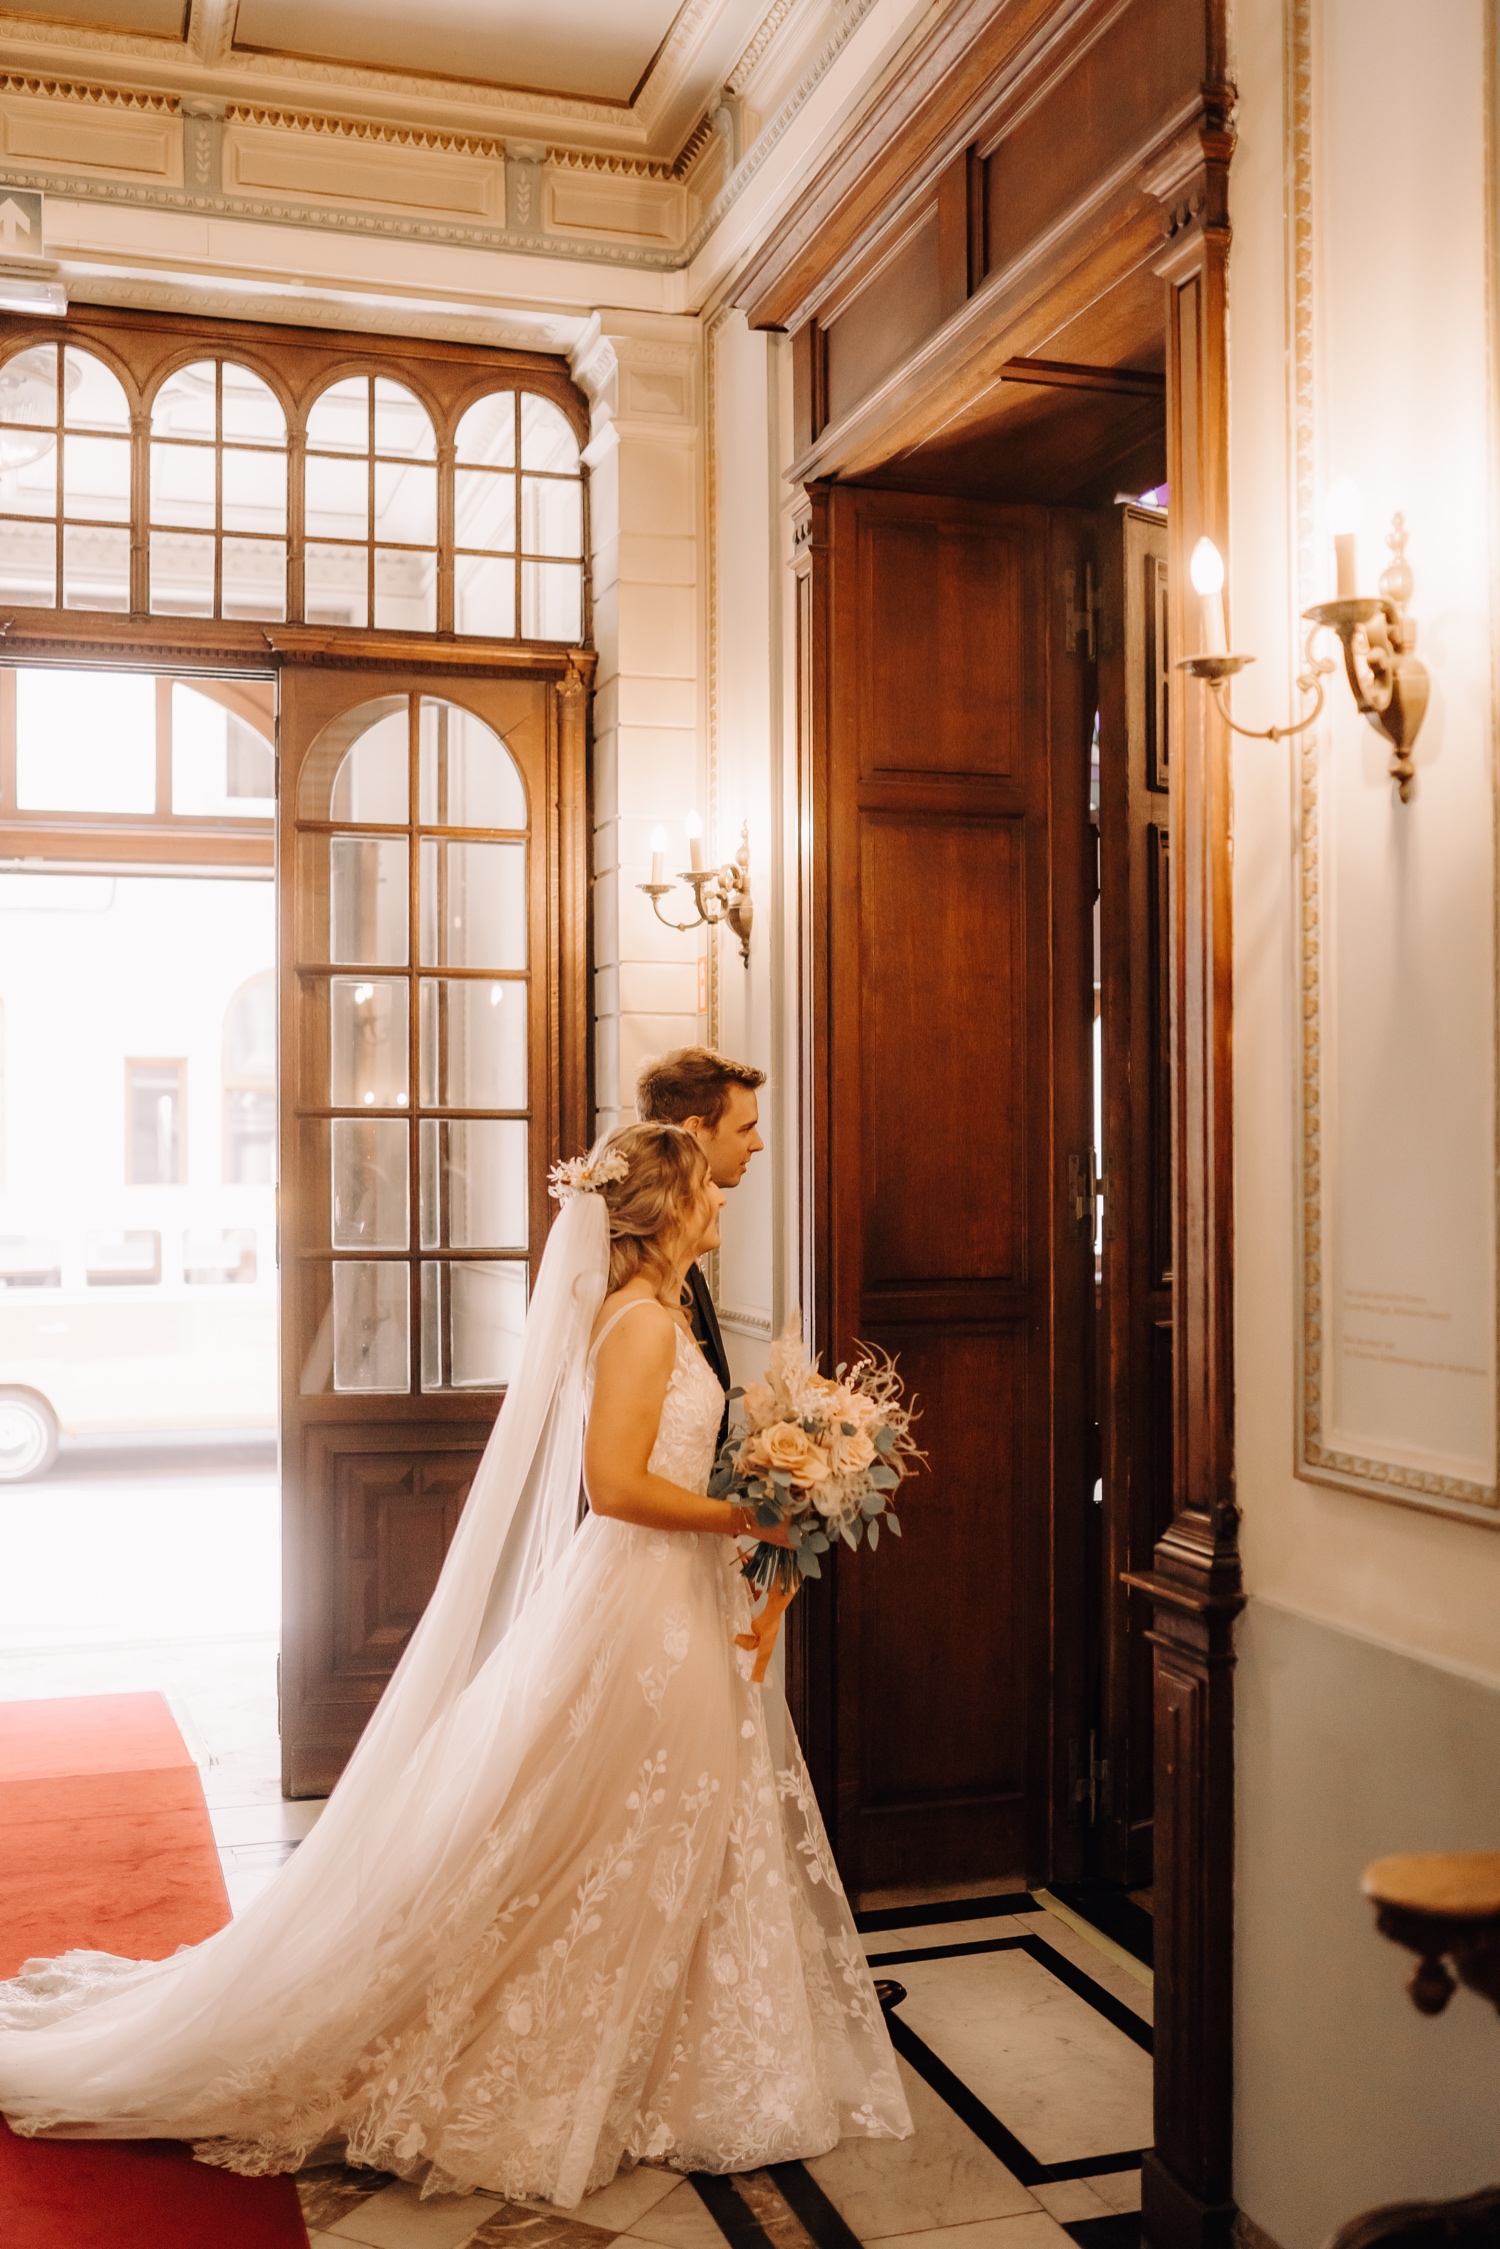 Huwelijksfotograaf Limburg - bruidspaar wandelt stadhuis binnen